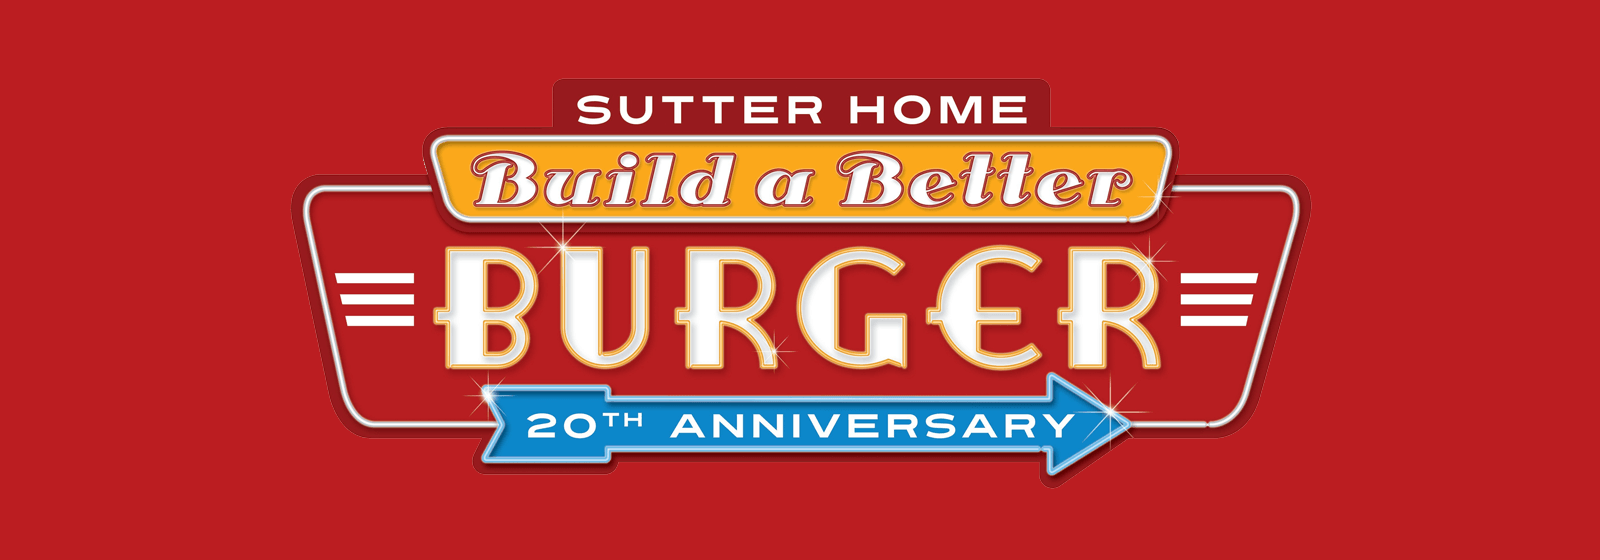 Sutter Home Header Image